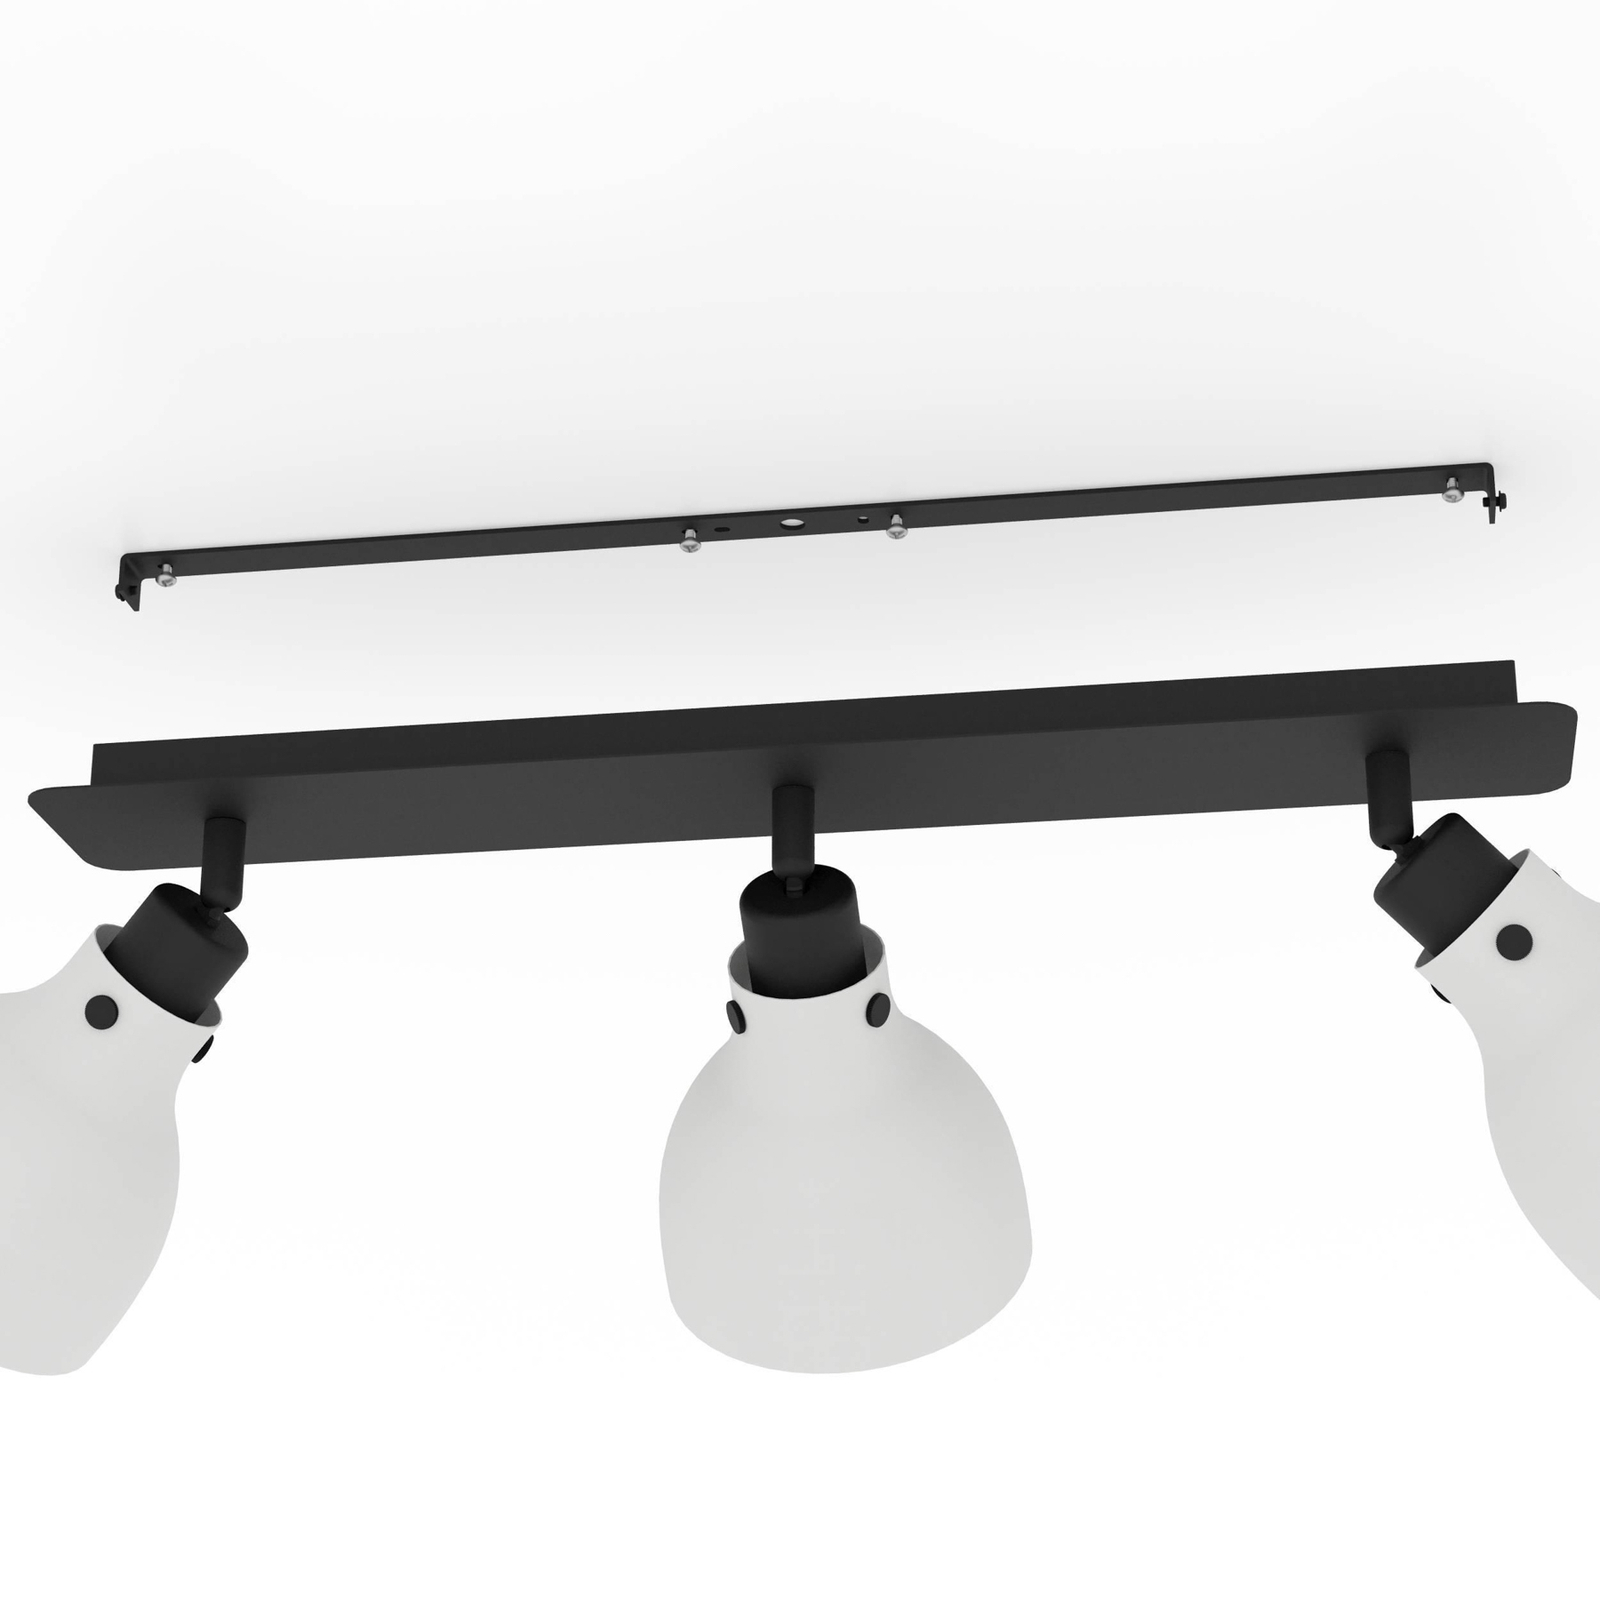 Matlock takspotlight, längd 74 cm, grå/svart, 3 lampor.